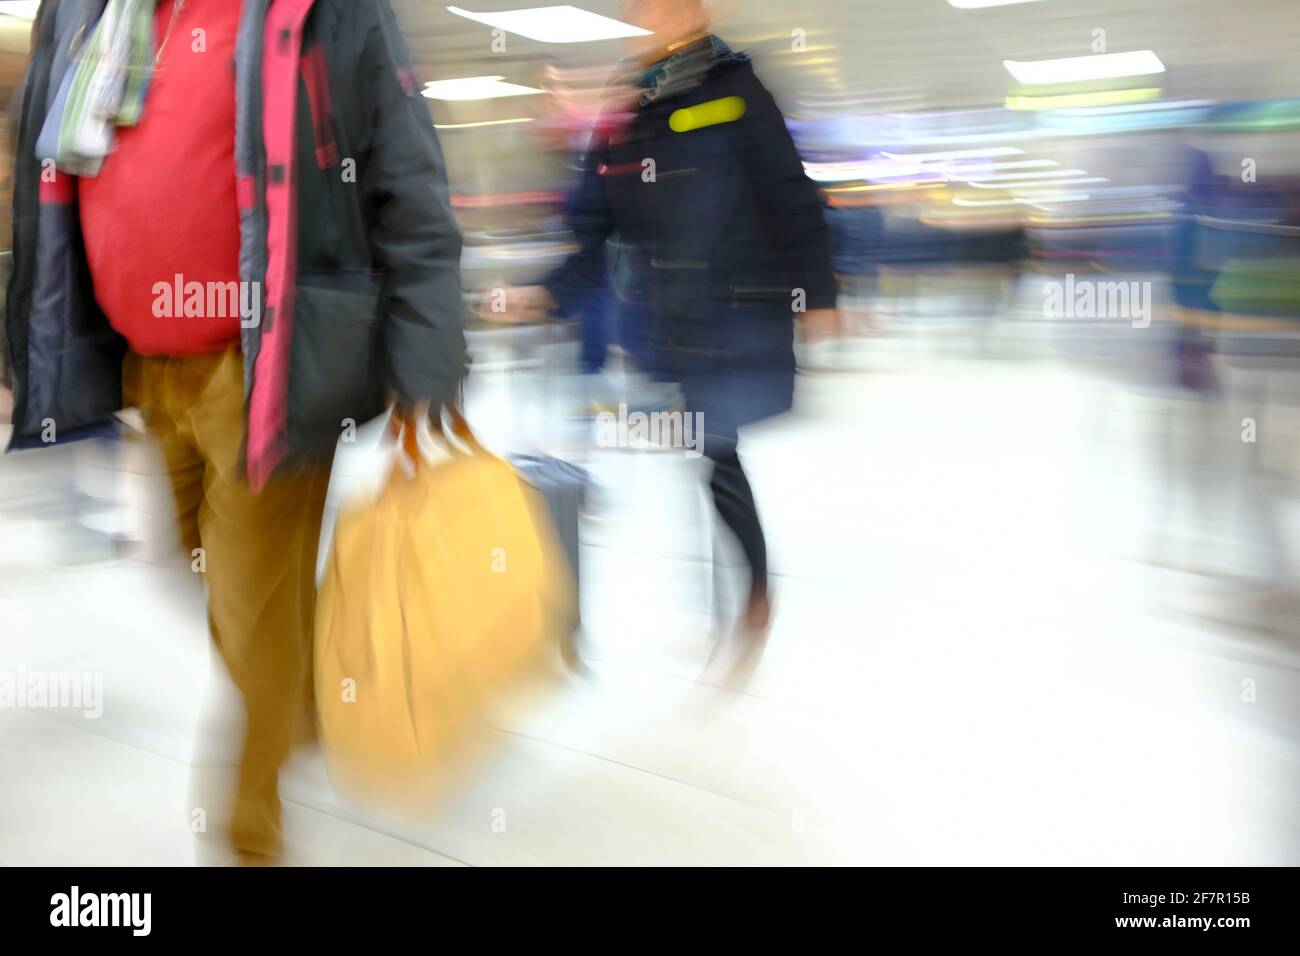 19.01.2019, Duesseldorf, Nordrhein-Westfalen, Deutschland - Menschen im Duesseldorfer Hauptbahnhof Stock Photo